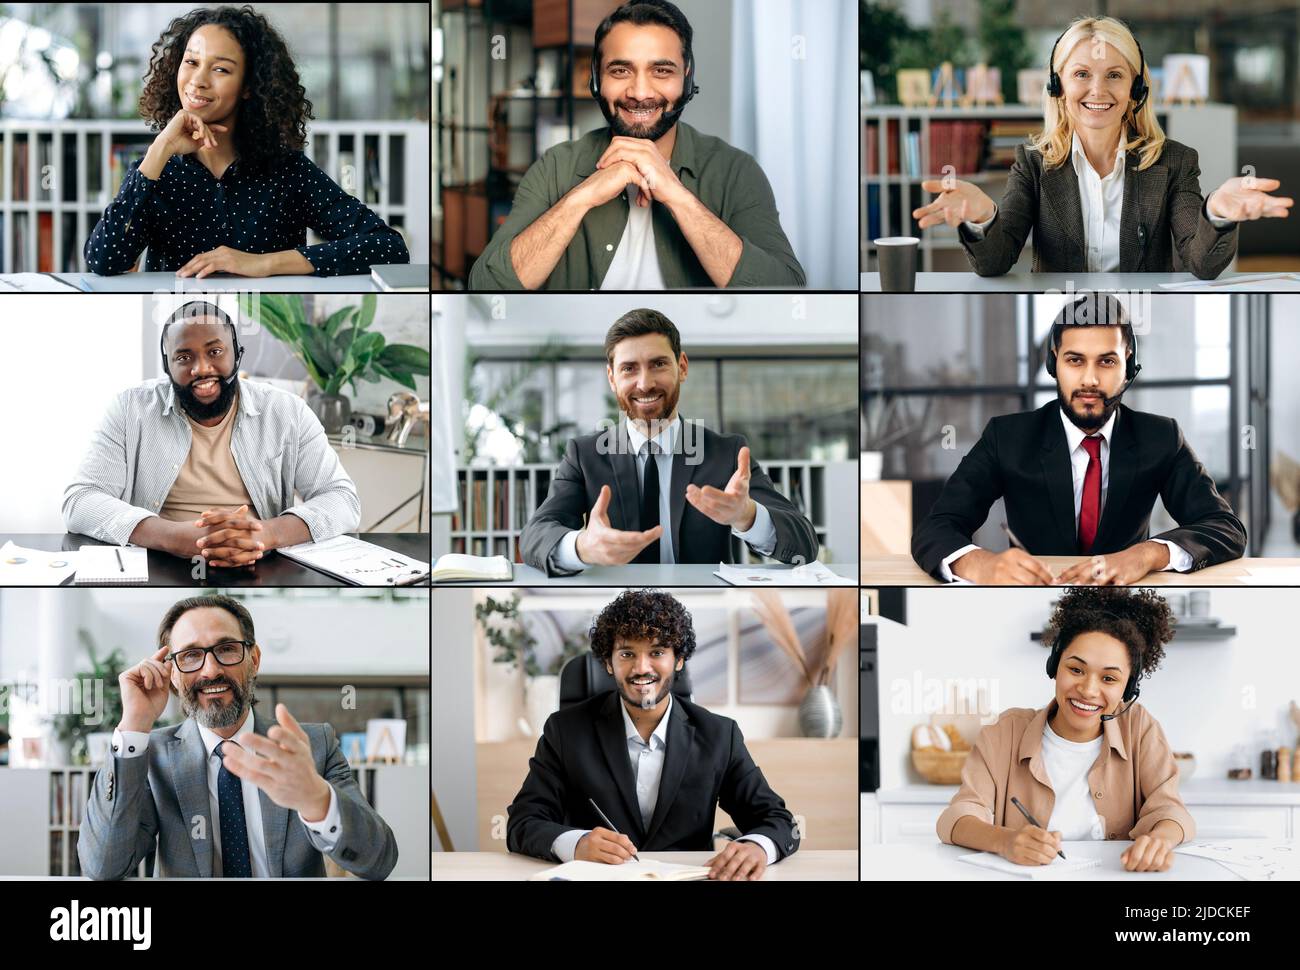 Concept de diversité des personnes. Mosaïque collage d'un visage de groupe multiracial d'hommes et de femmes souriants réussis, d'âges différents, exprimant des émotions différentes, regardant la caméra Banque D'Images